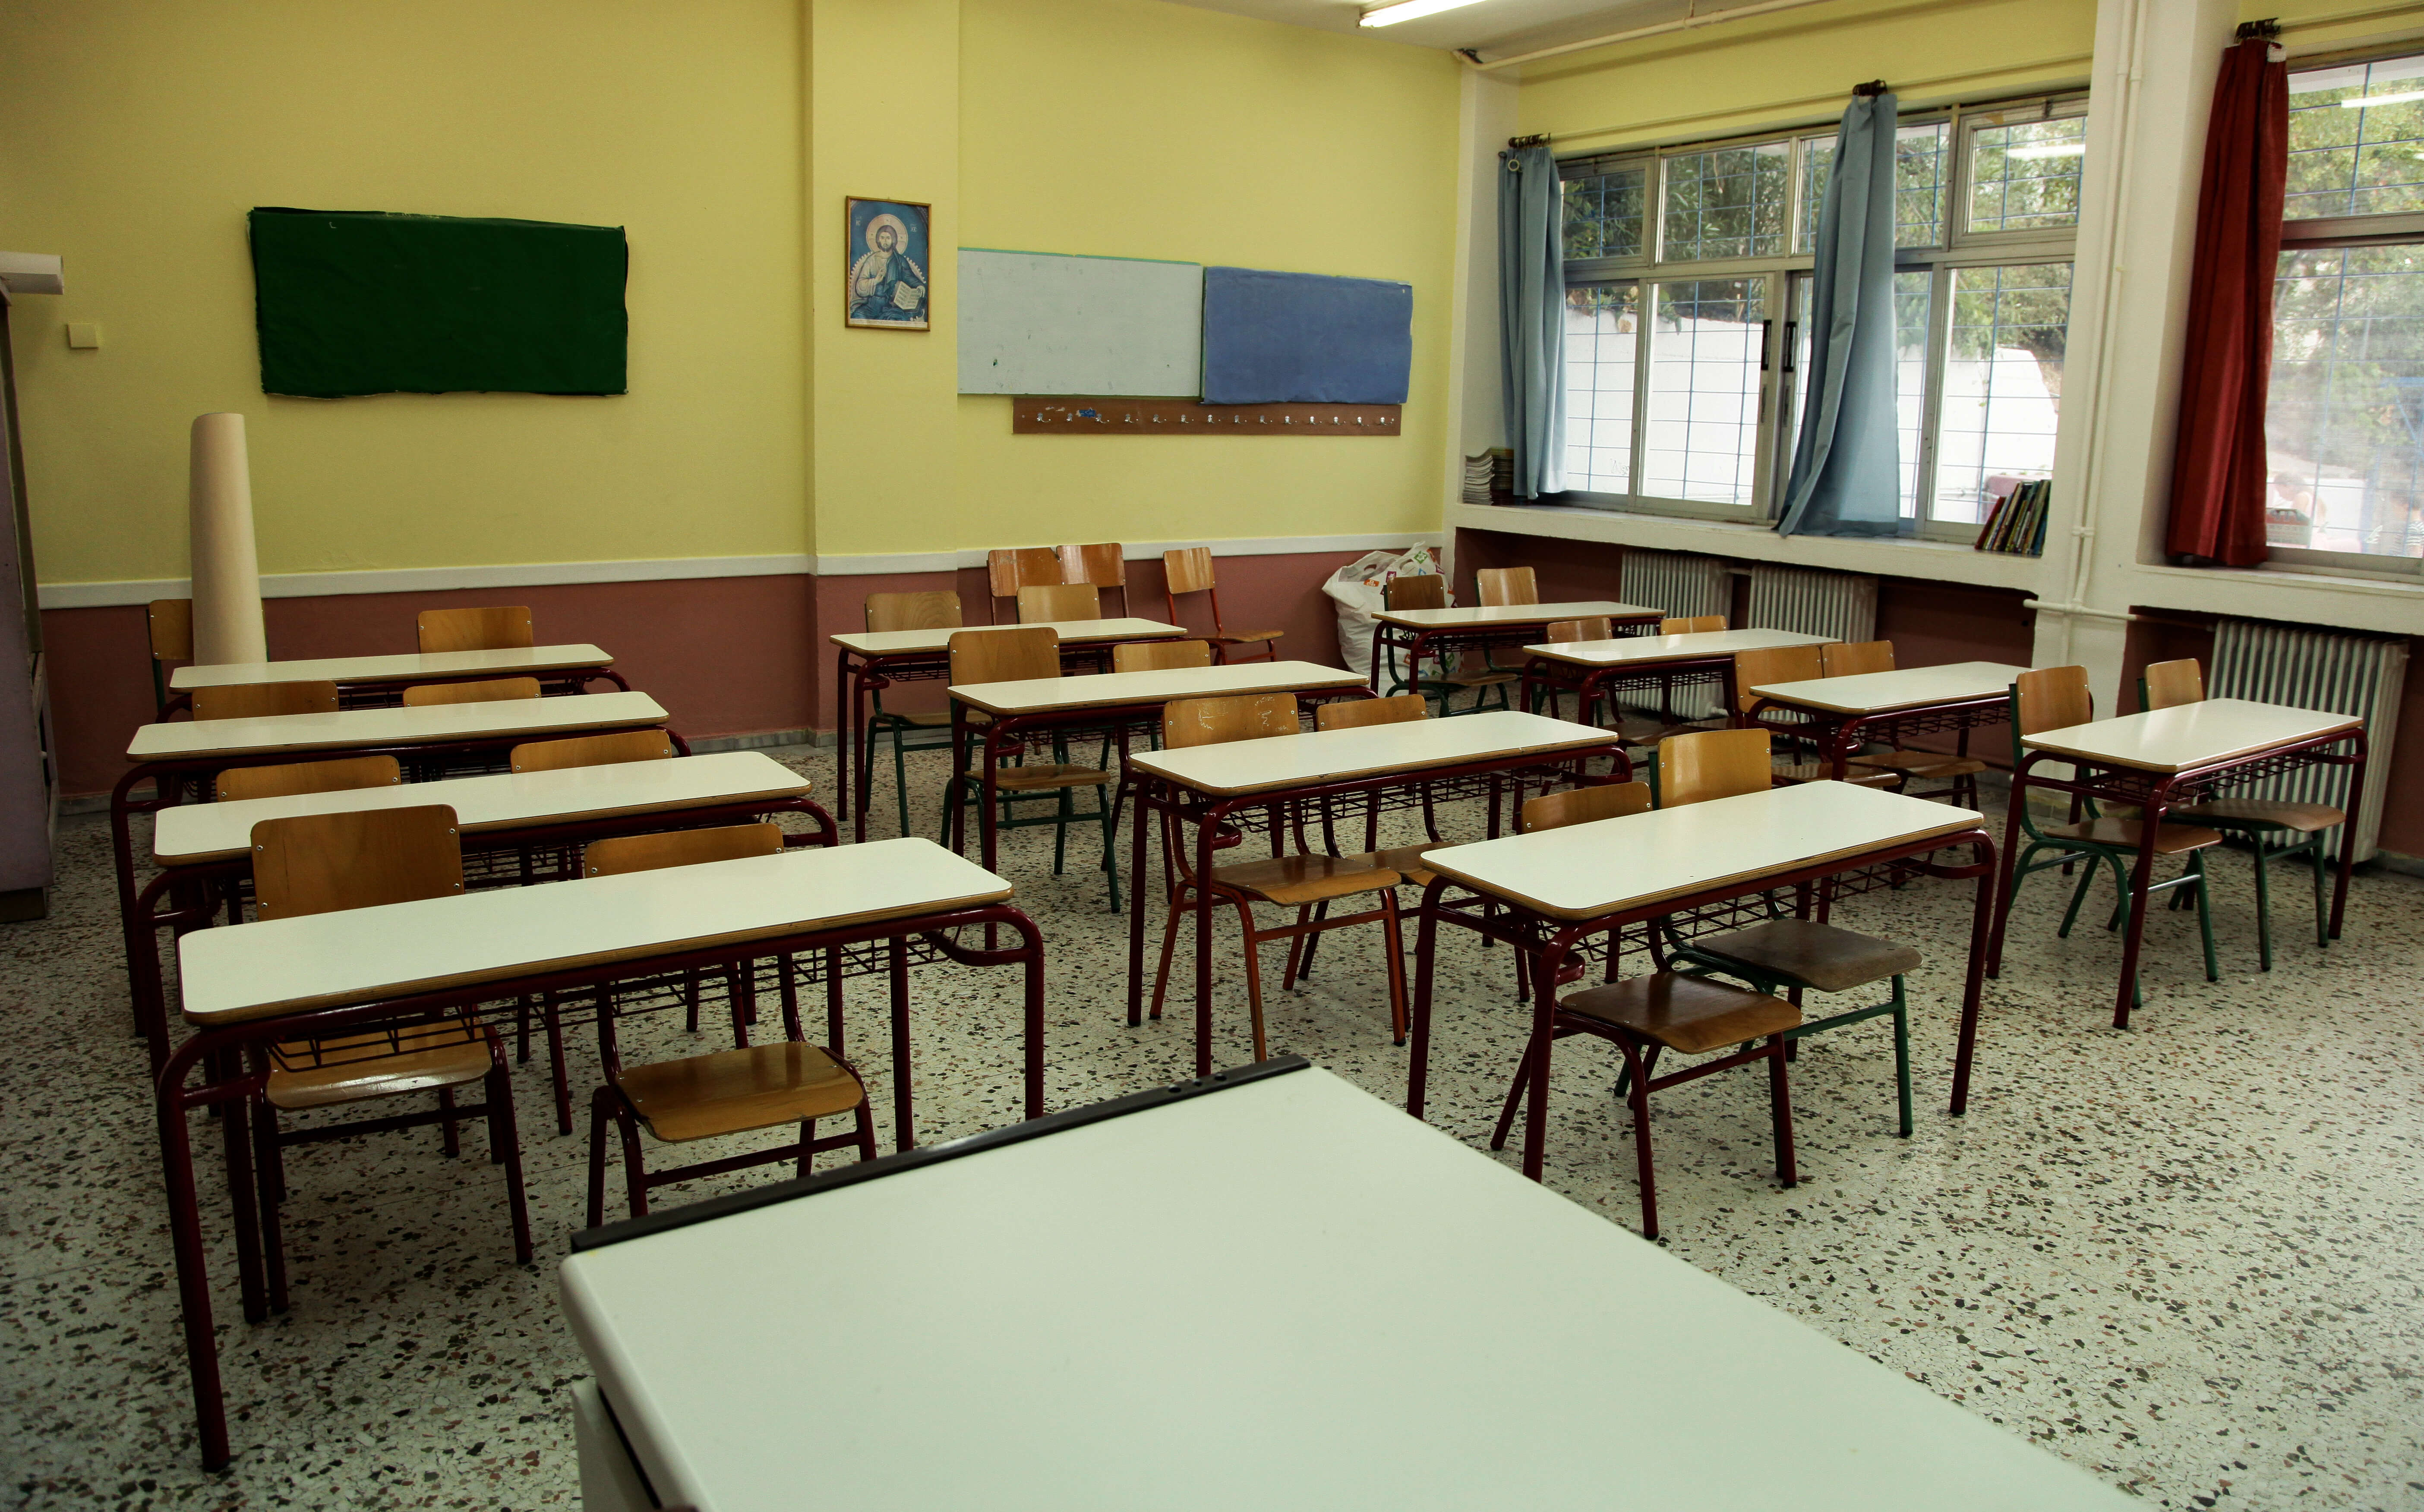 Θεσσαλονίκη: Τραυματισμός μαθητή σε σχολείο από σπασμένο τζάμι – Η στιγμή της μεταφοράς σε νοσοκομείο